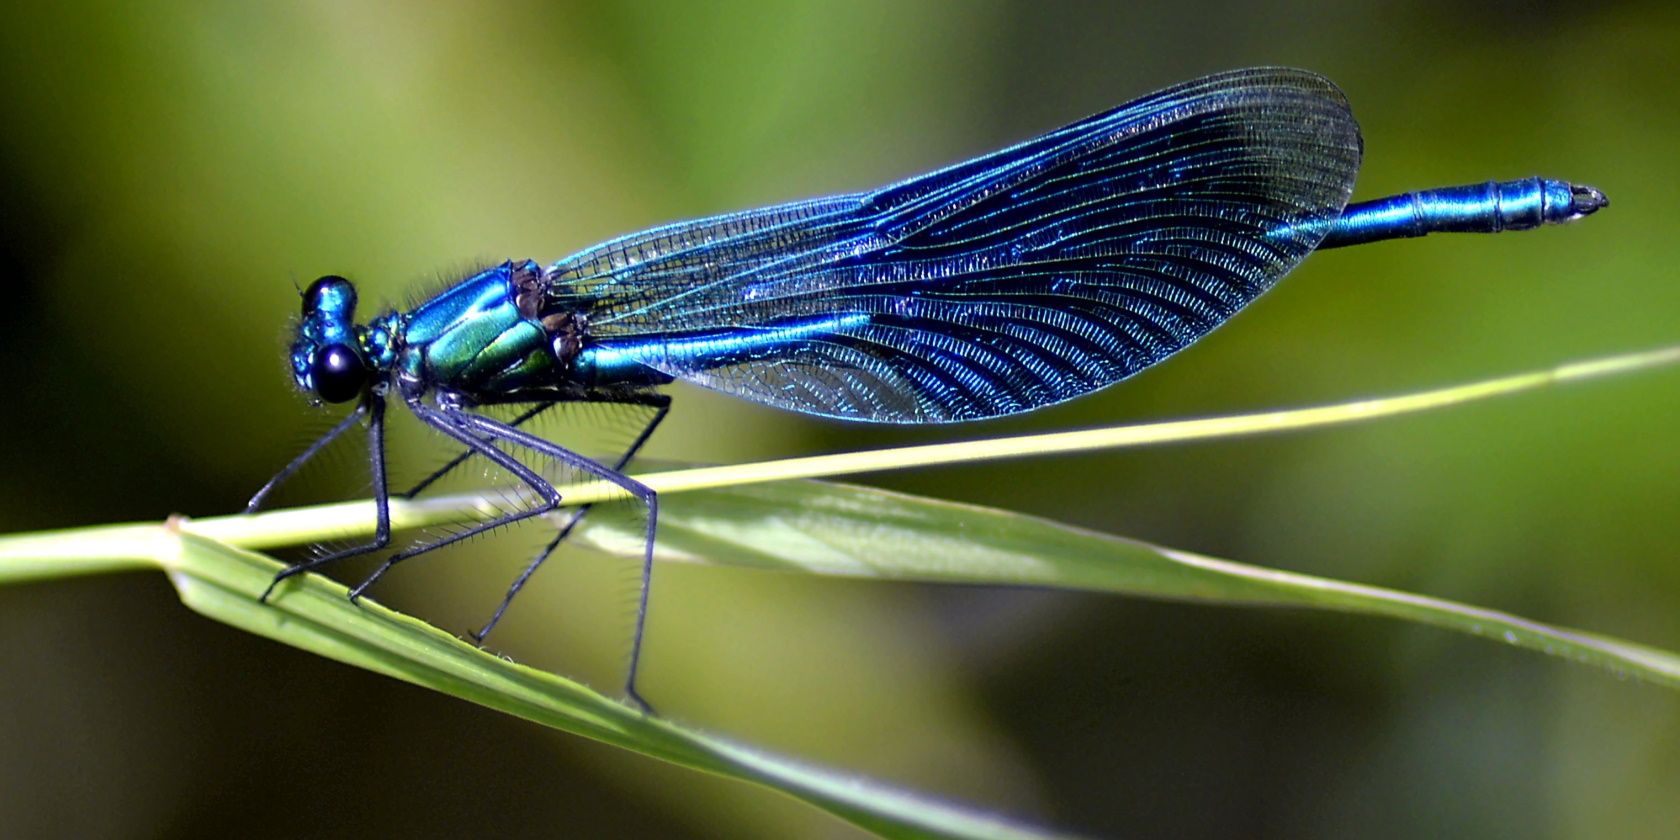 dragonfly-on-leaf